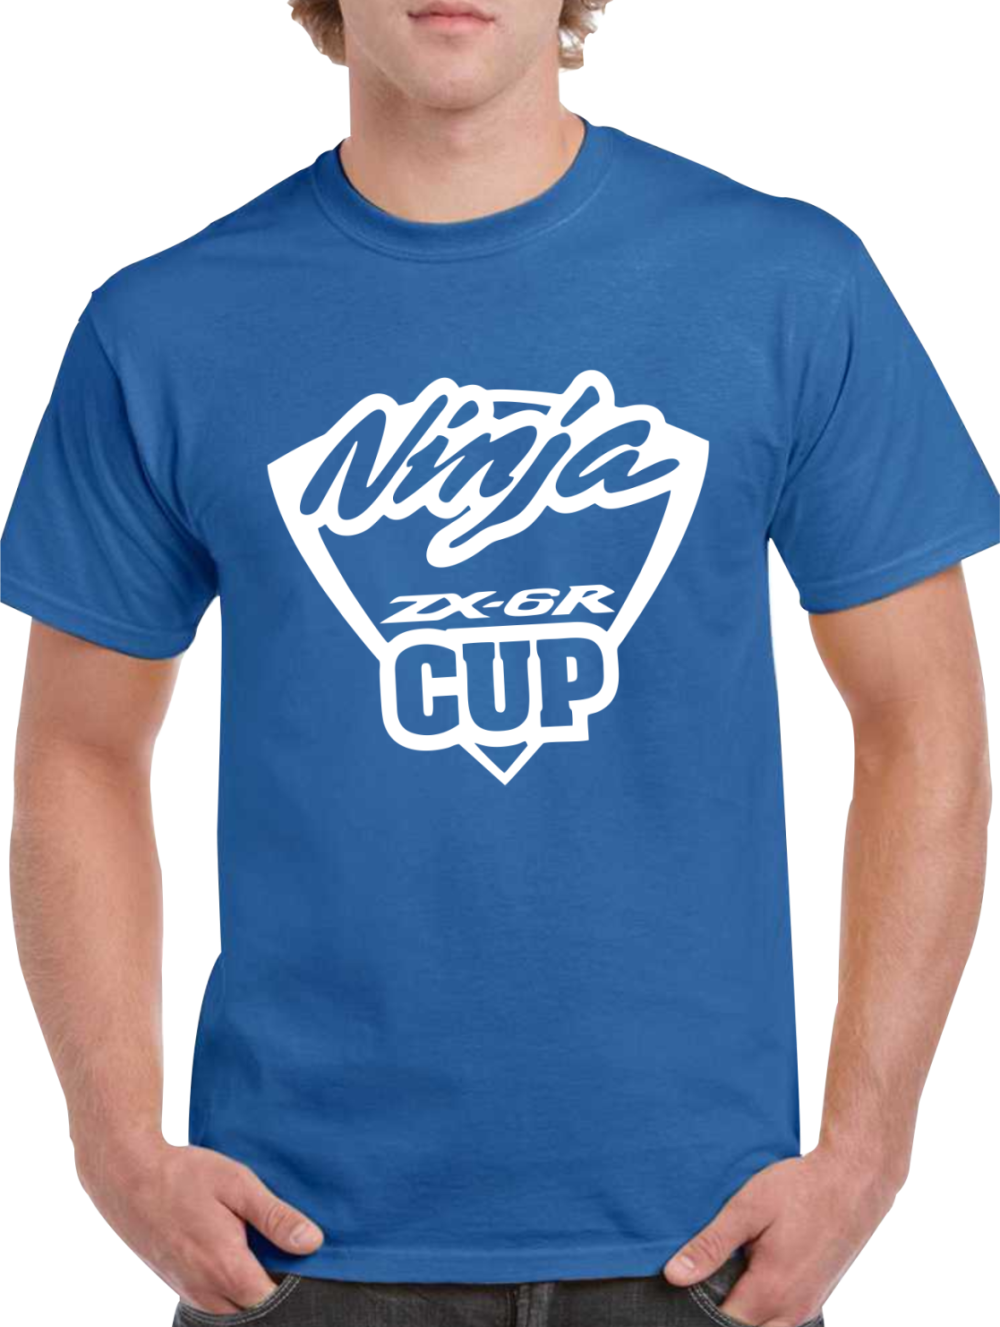 camiseta ninja zx6r cup